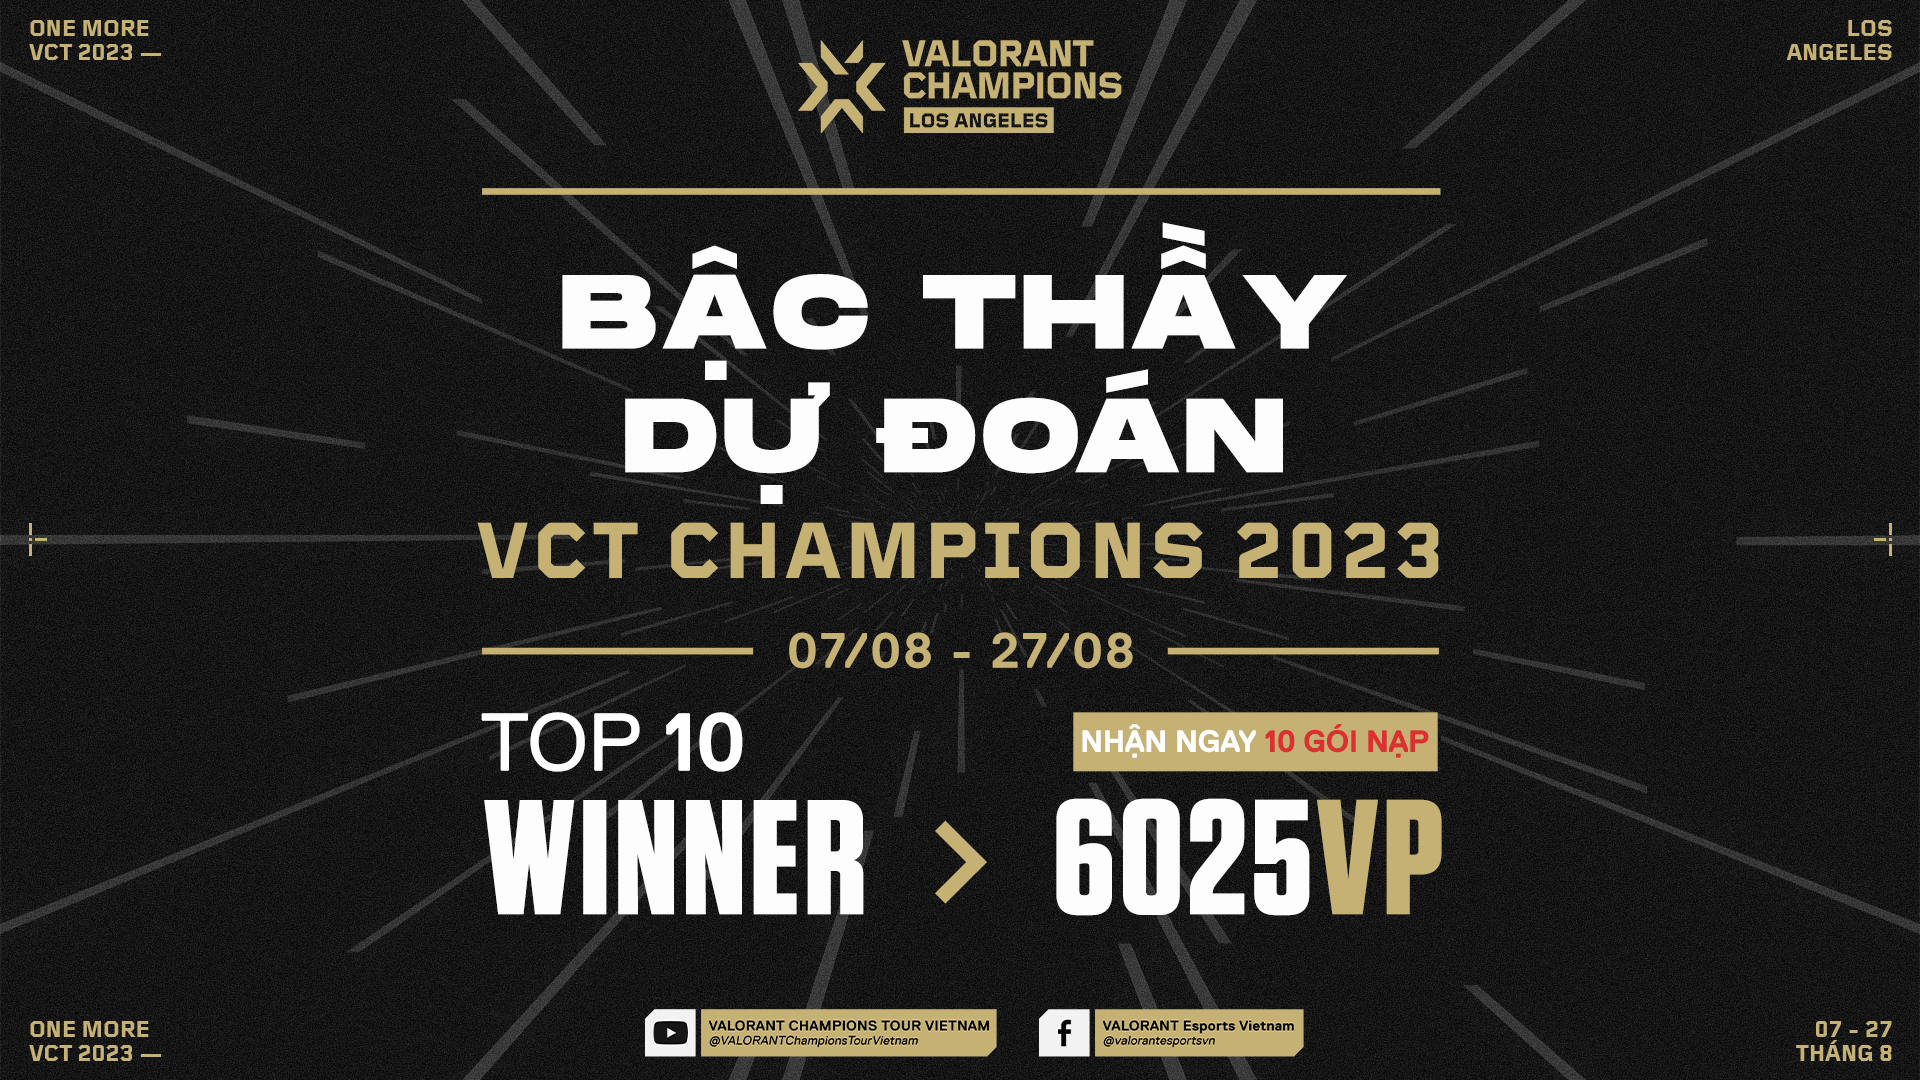 "BẬC THẦY DỰ ĐOÁN" VCT CHAMPIONS 2023